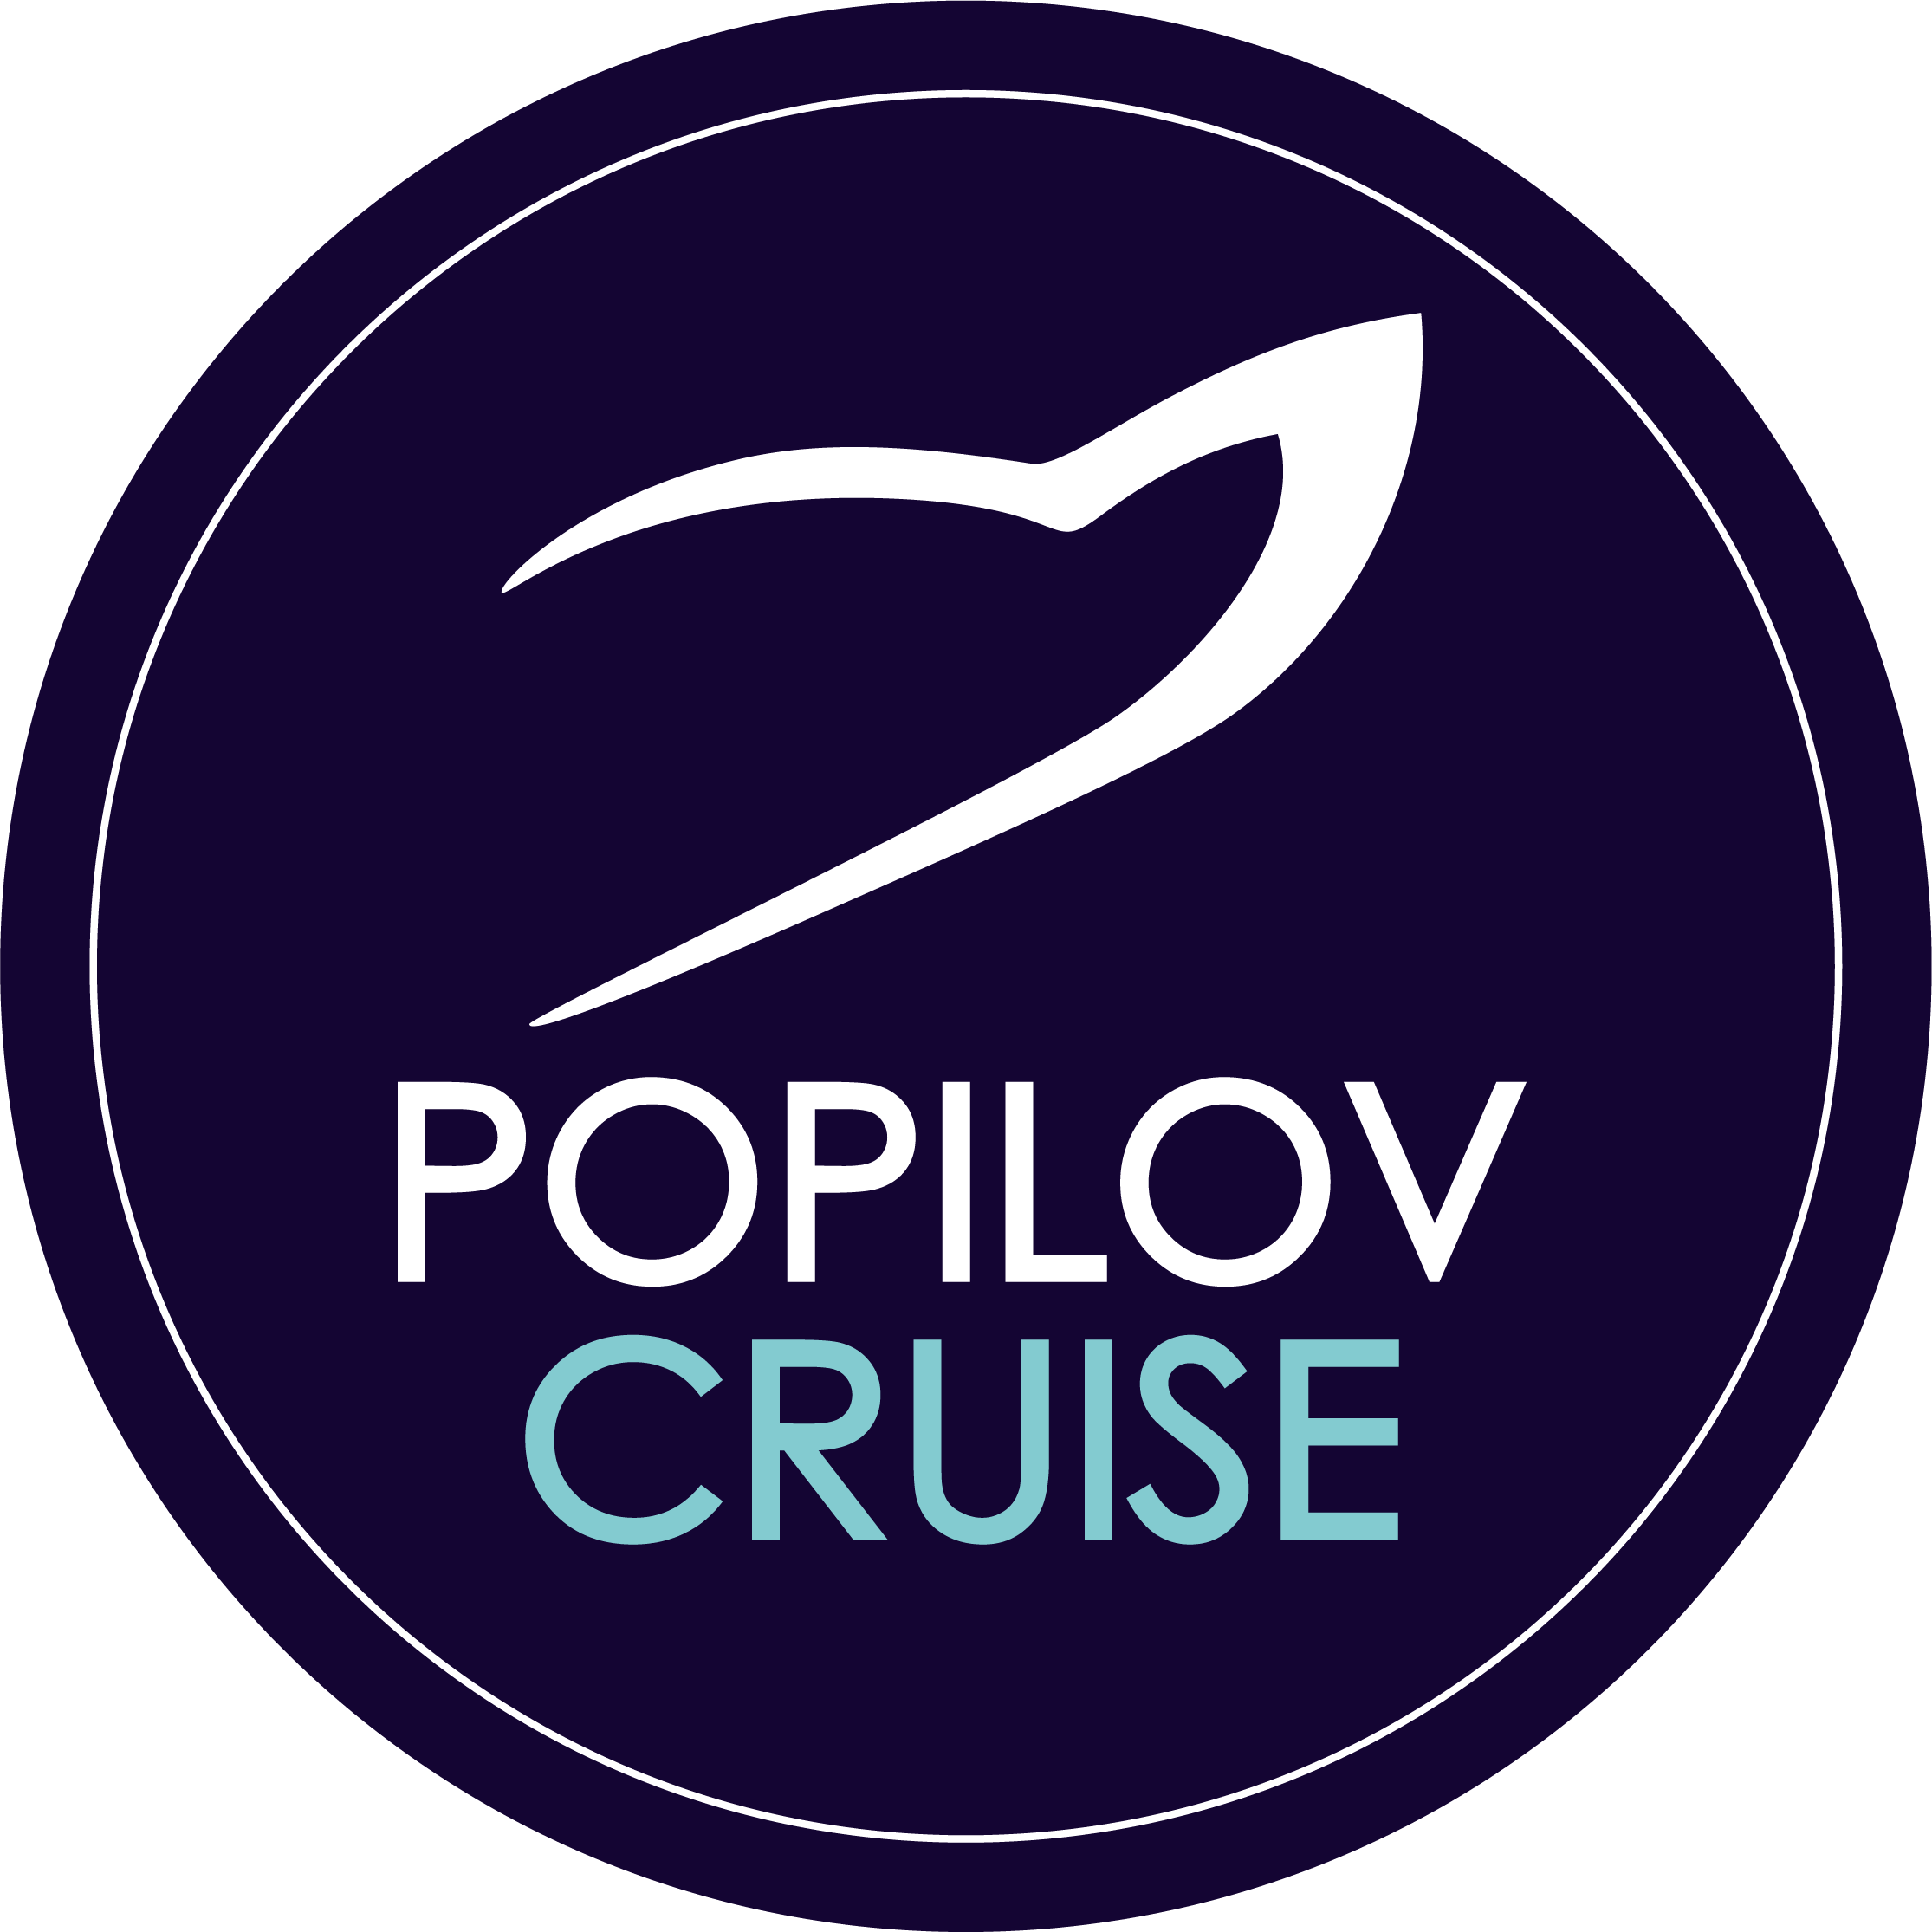 Popilov Cruise